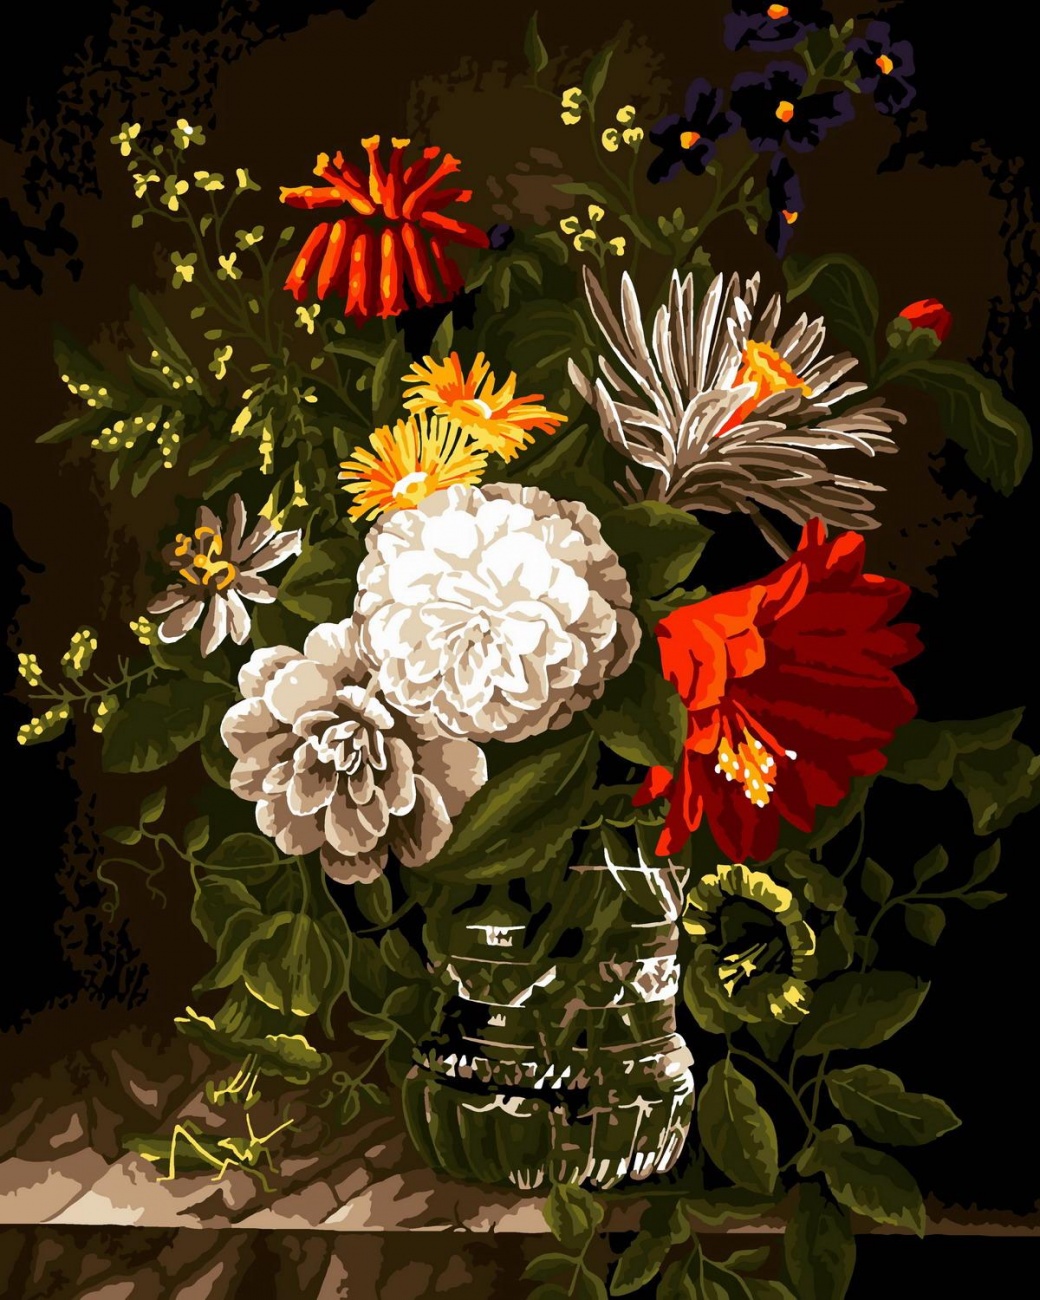 Картина по номерам LORI Цветы в граненой хрустальной вазе Рх-058